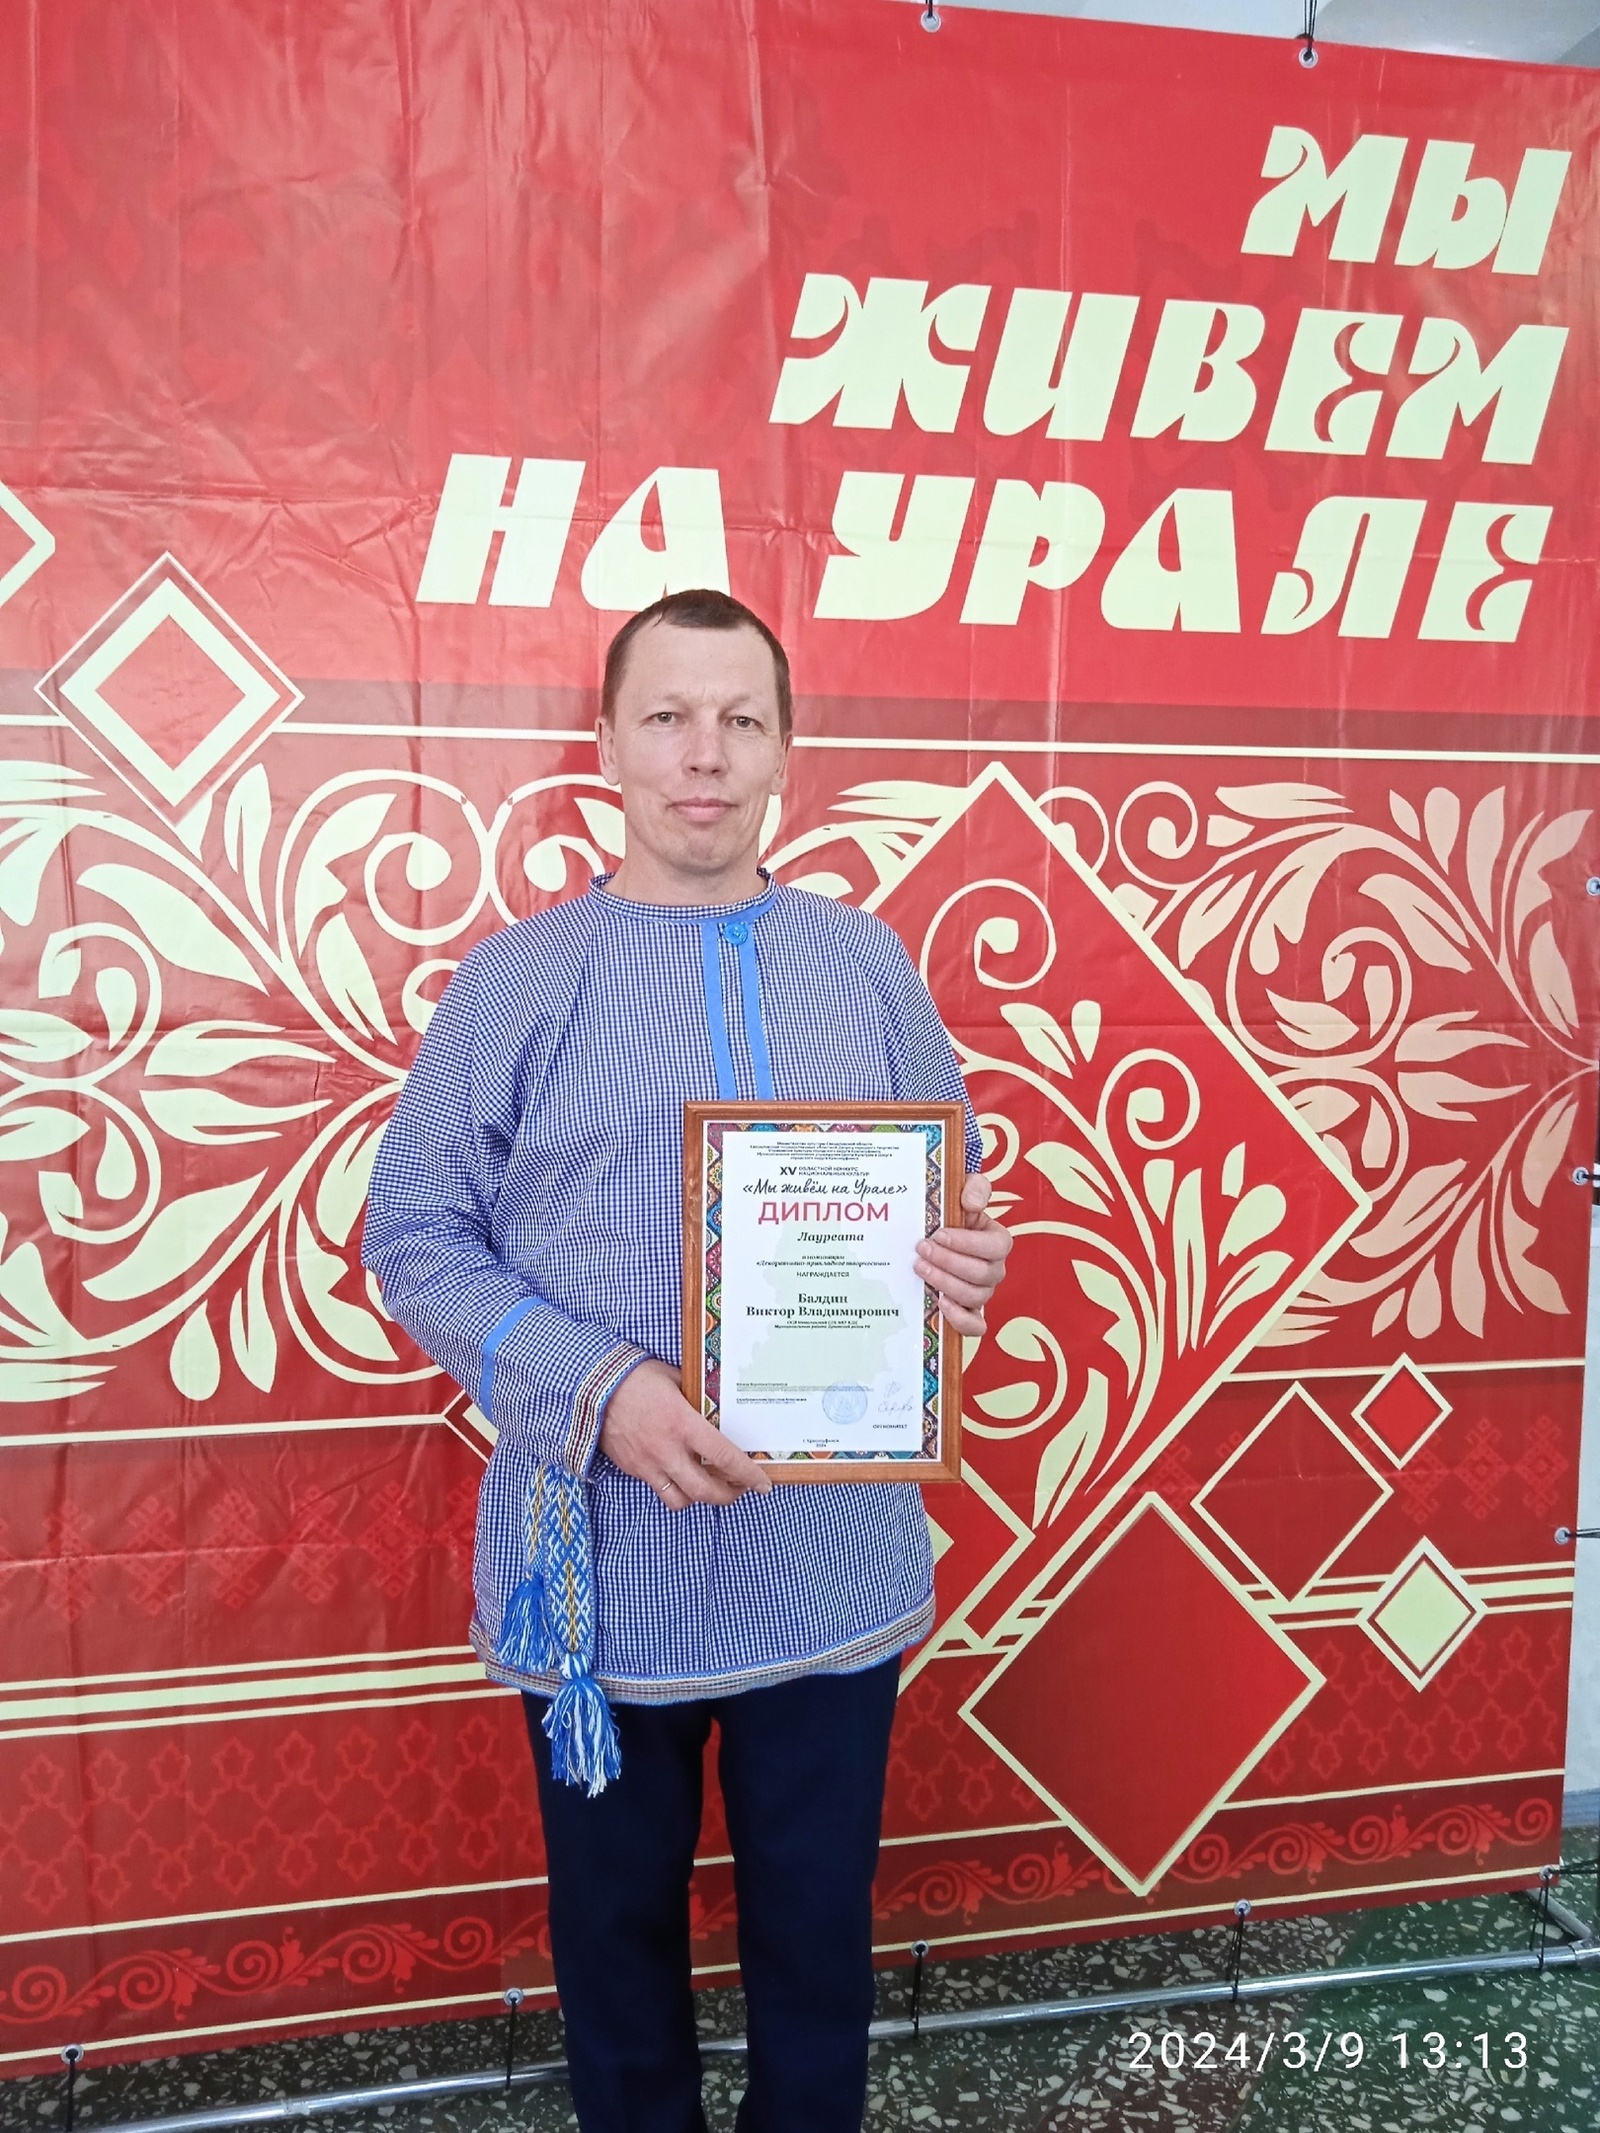 Культработник Метелинского СДК стал лауреатом XV областного конкурса национальных культур "Мы живем на Урале"